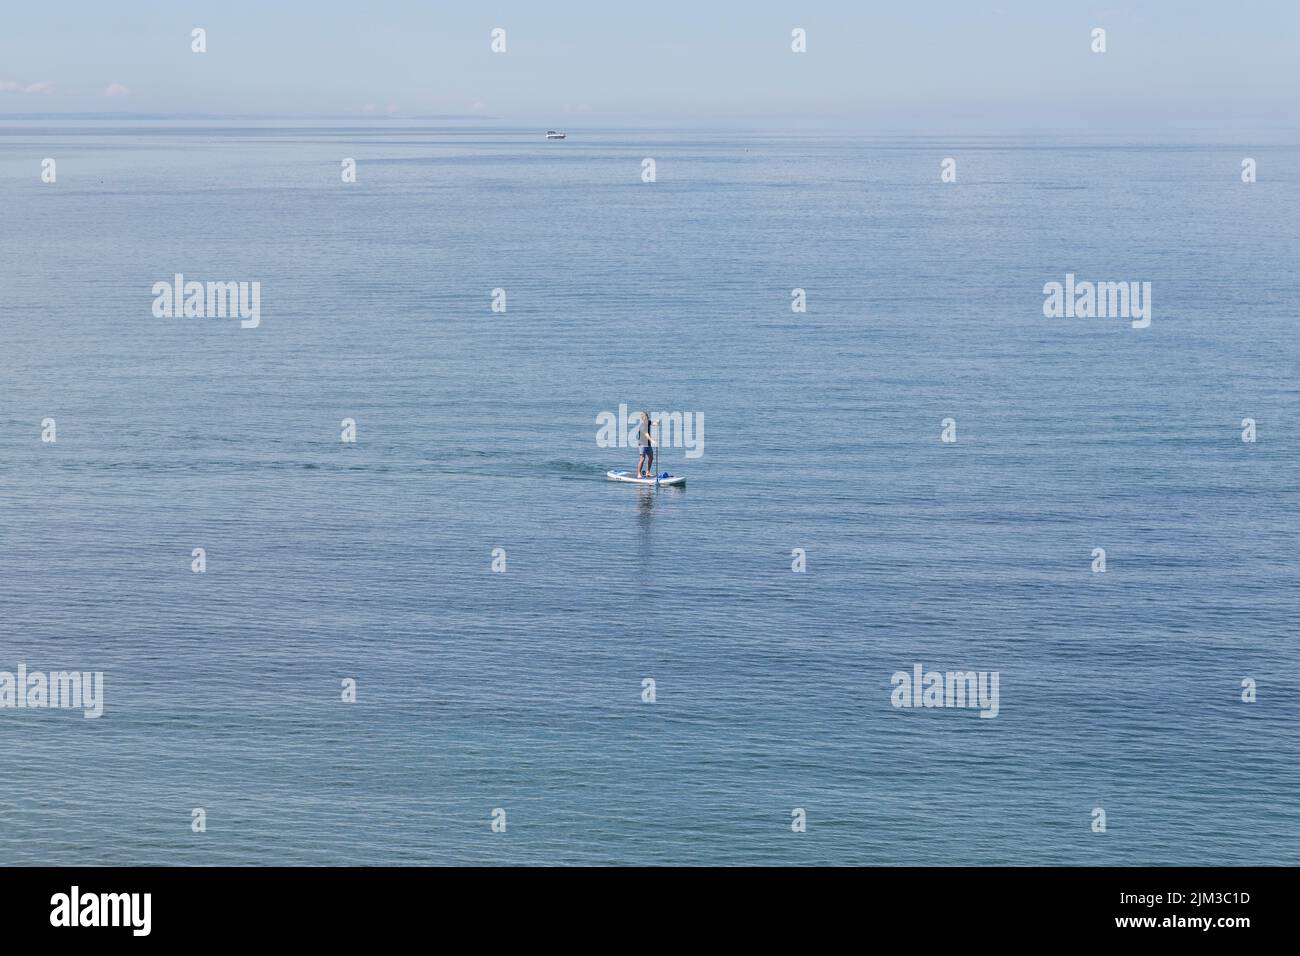 Un homme paddle-board dans la mer. Santé, fitness, vacances, loisirs, concept de temps seul. Banque D'Images